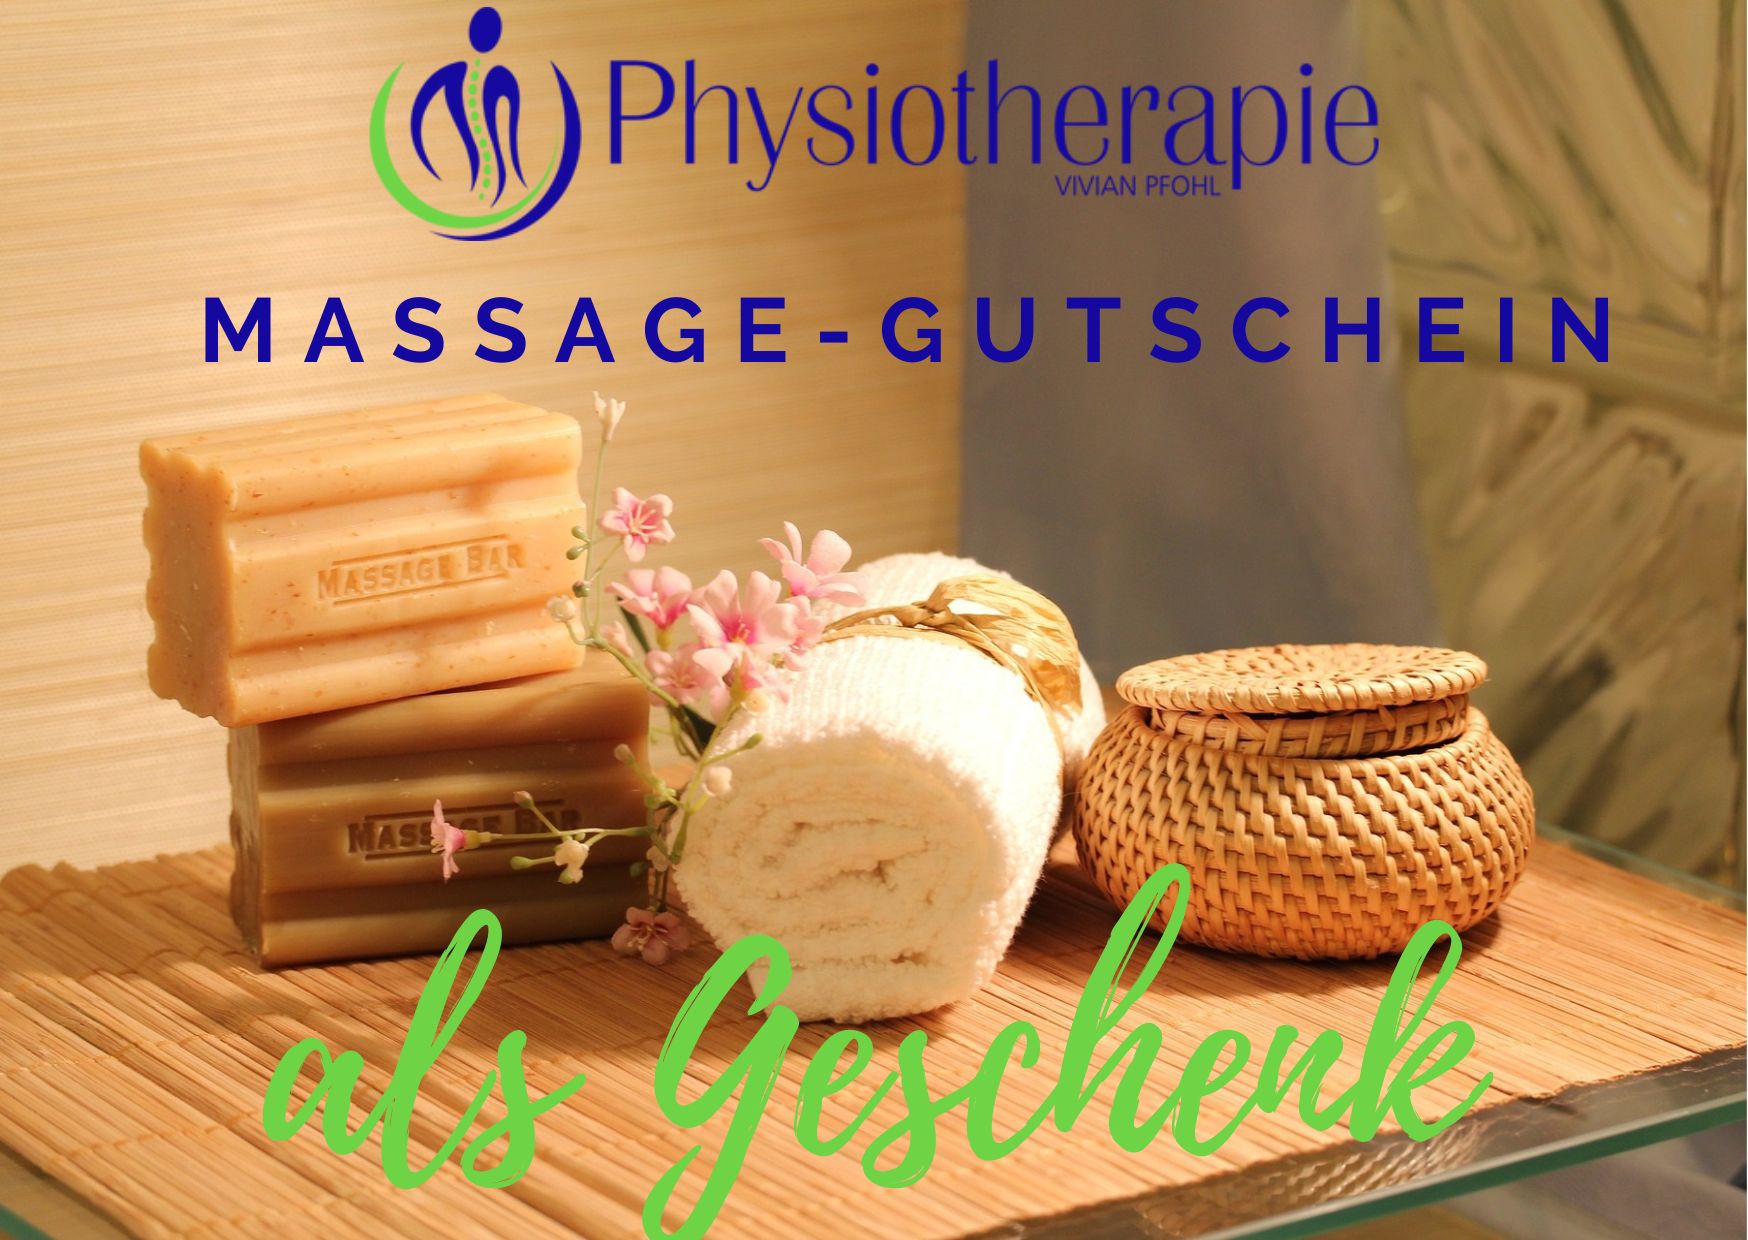 Gutschein Physiotherapie Pfohl Magdeburg